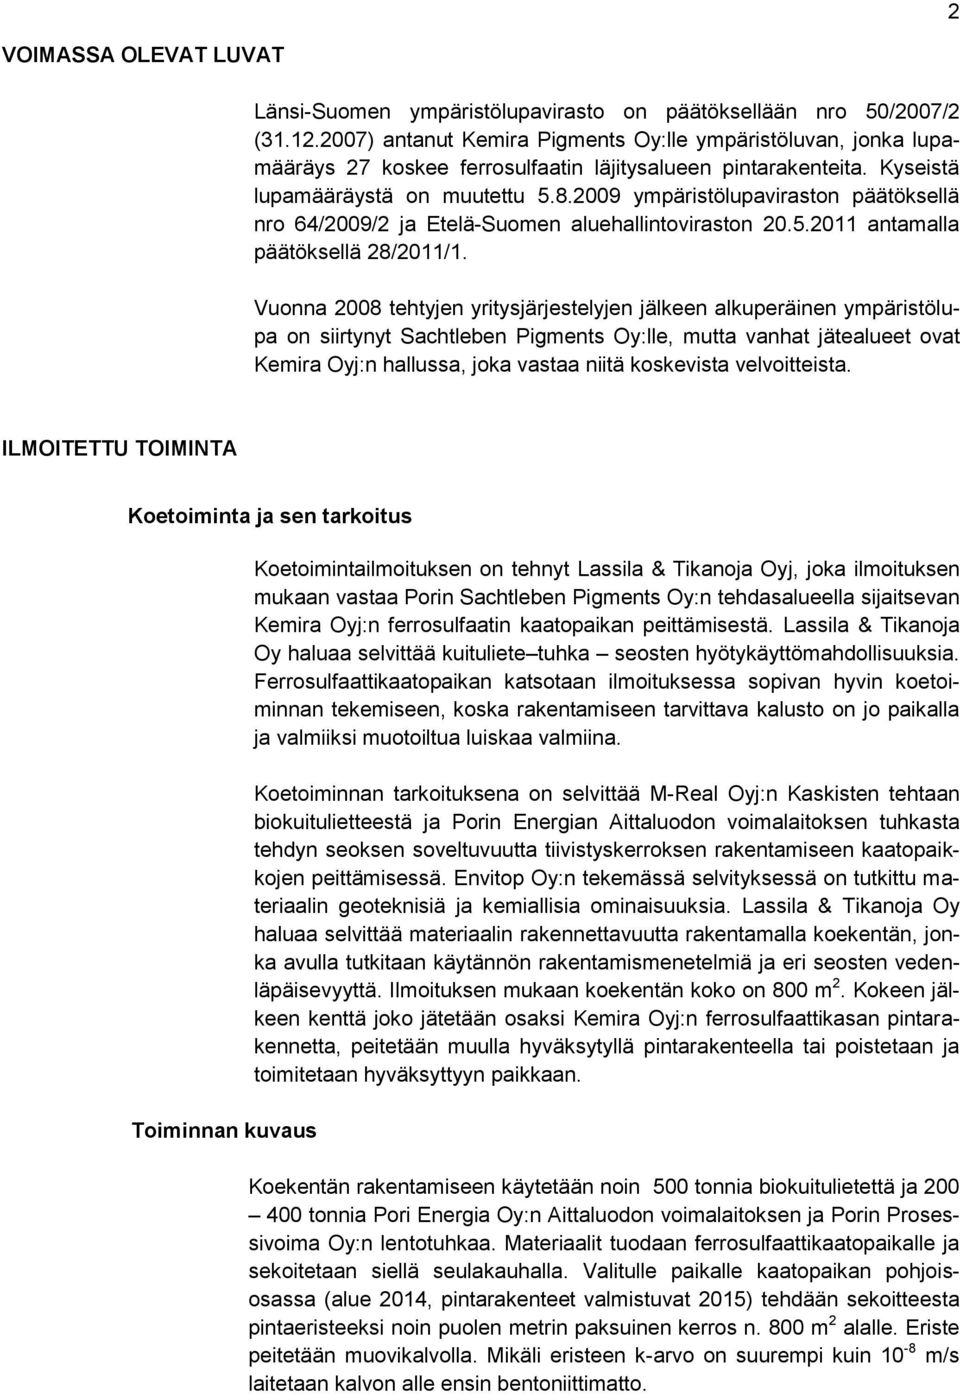 2009 ympäristölupaviraston päätöksellä nro 64/2009/2 ja Etelä-Suomen aluehallintoviraston 20.5.2011 antamalla päätöksellä 28/2011/1.